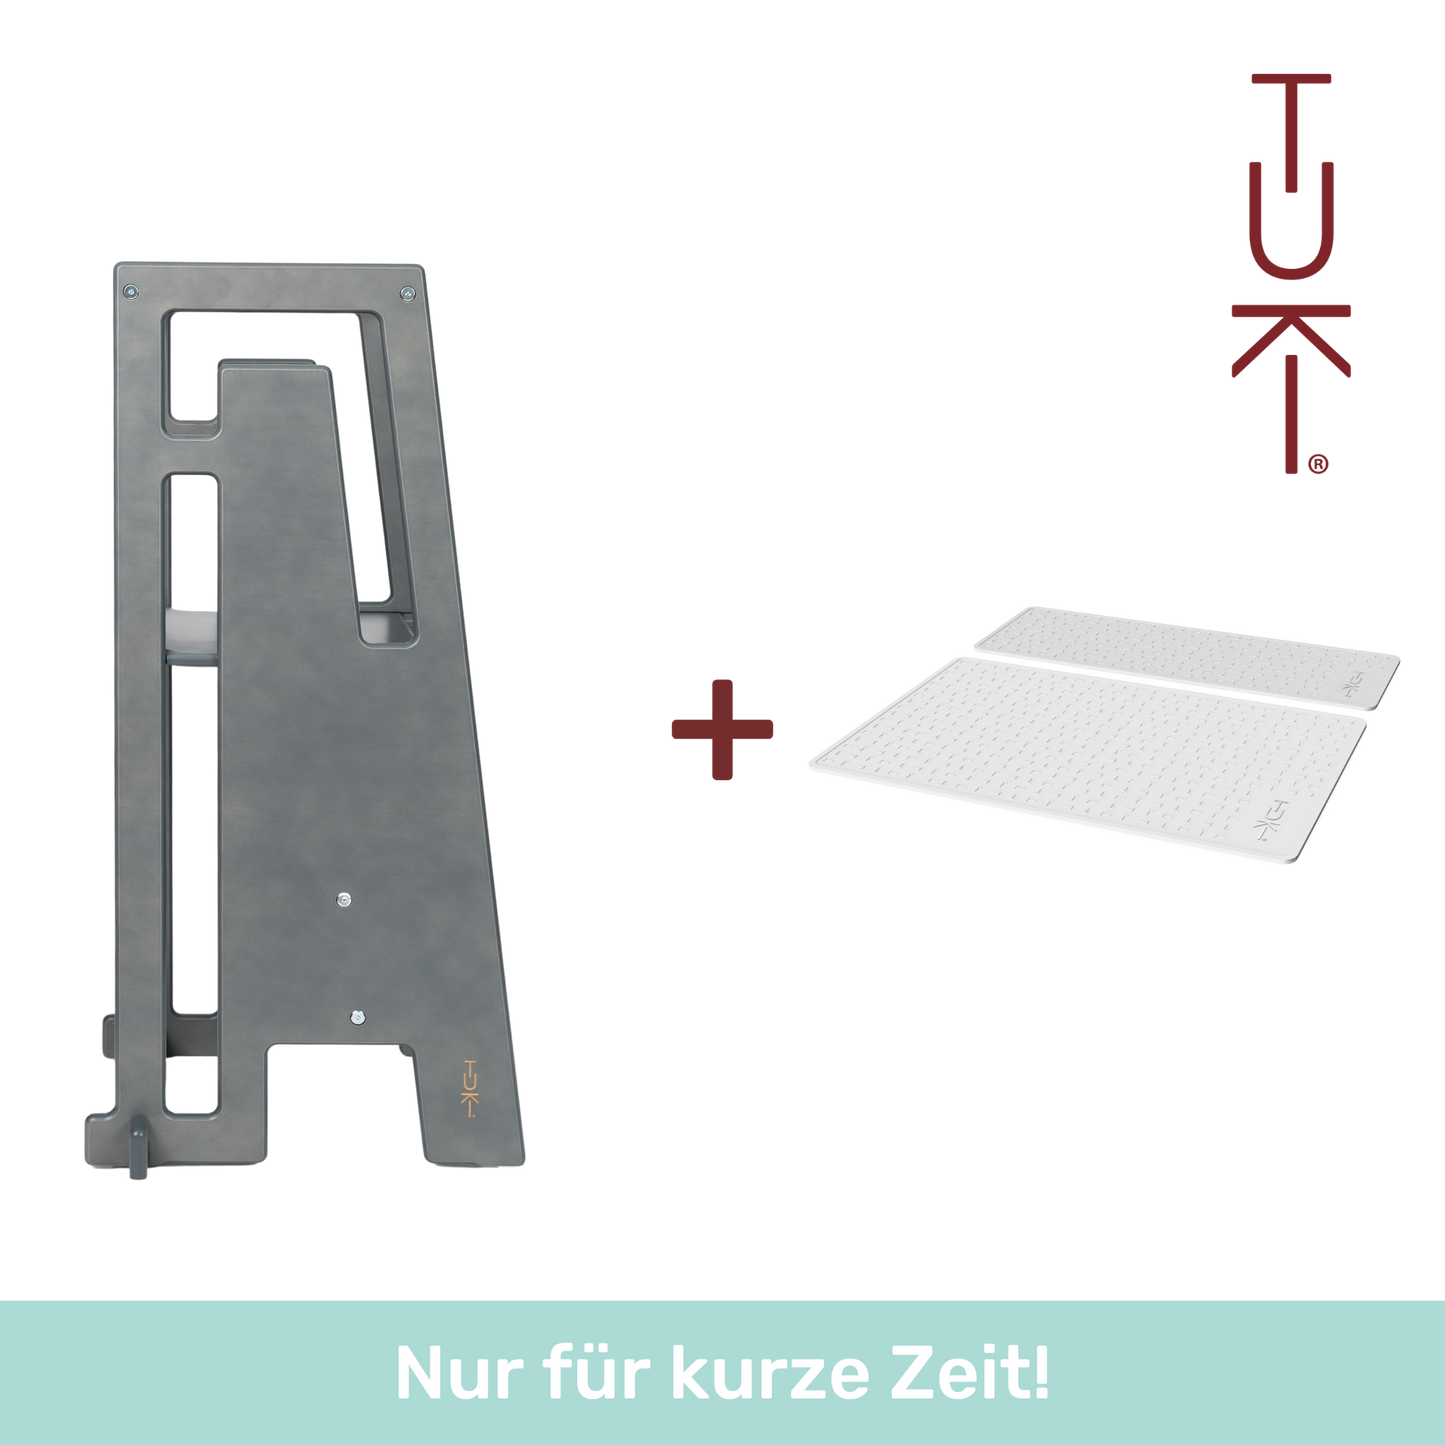 Tuki® Spring Bundle (Learning Tower + Anti-Slip Mat Set)